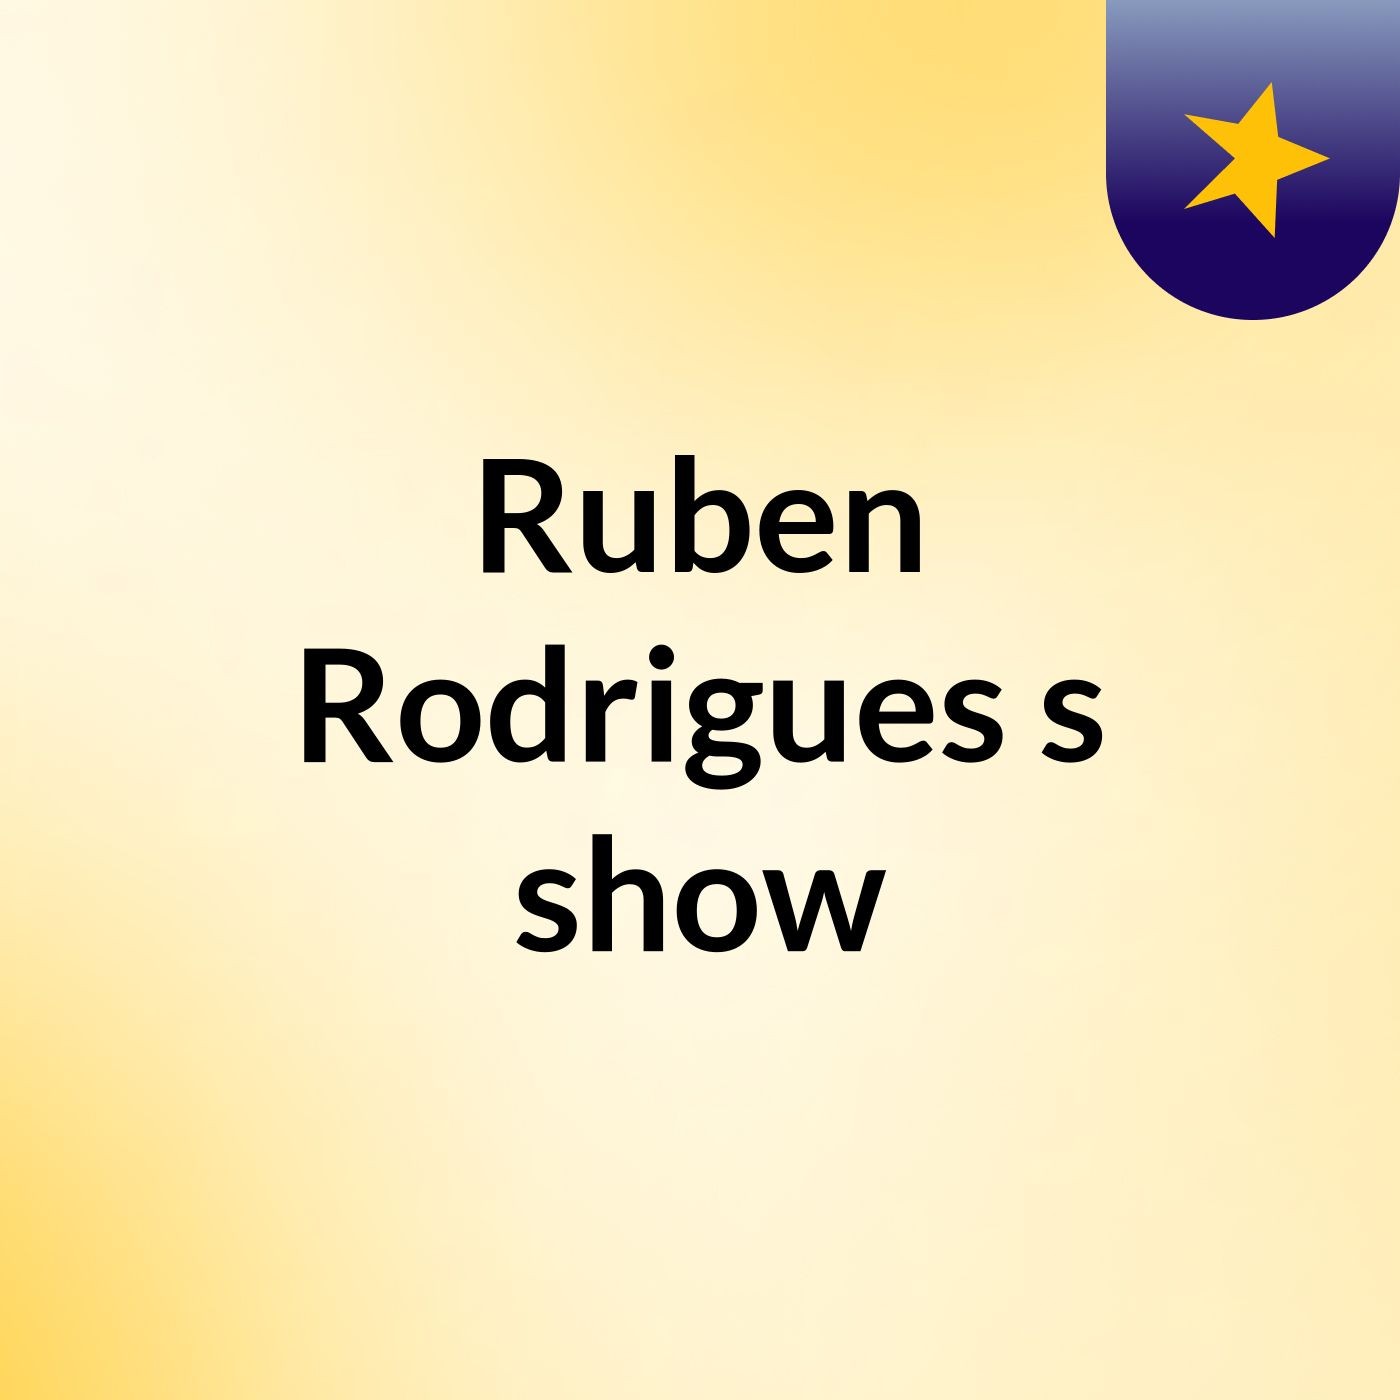 Ruben Rodrigues's show